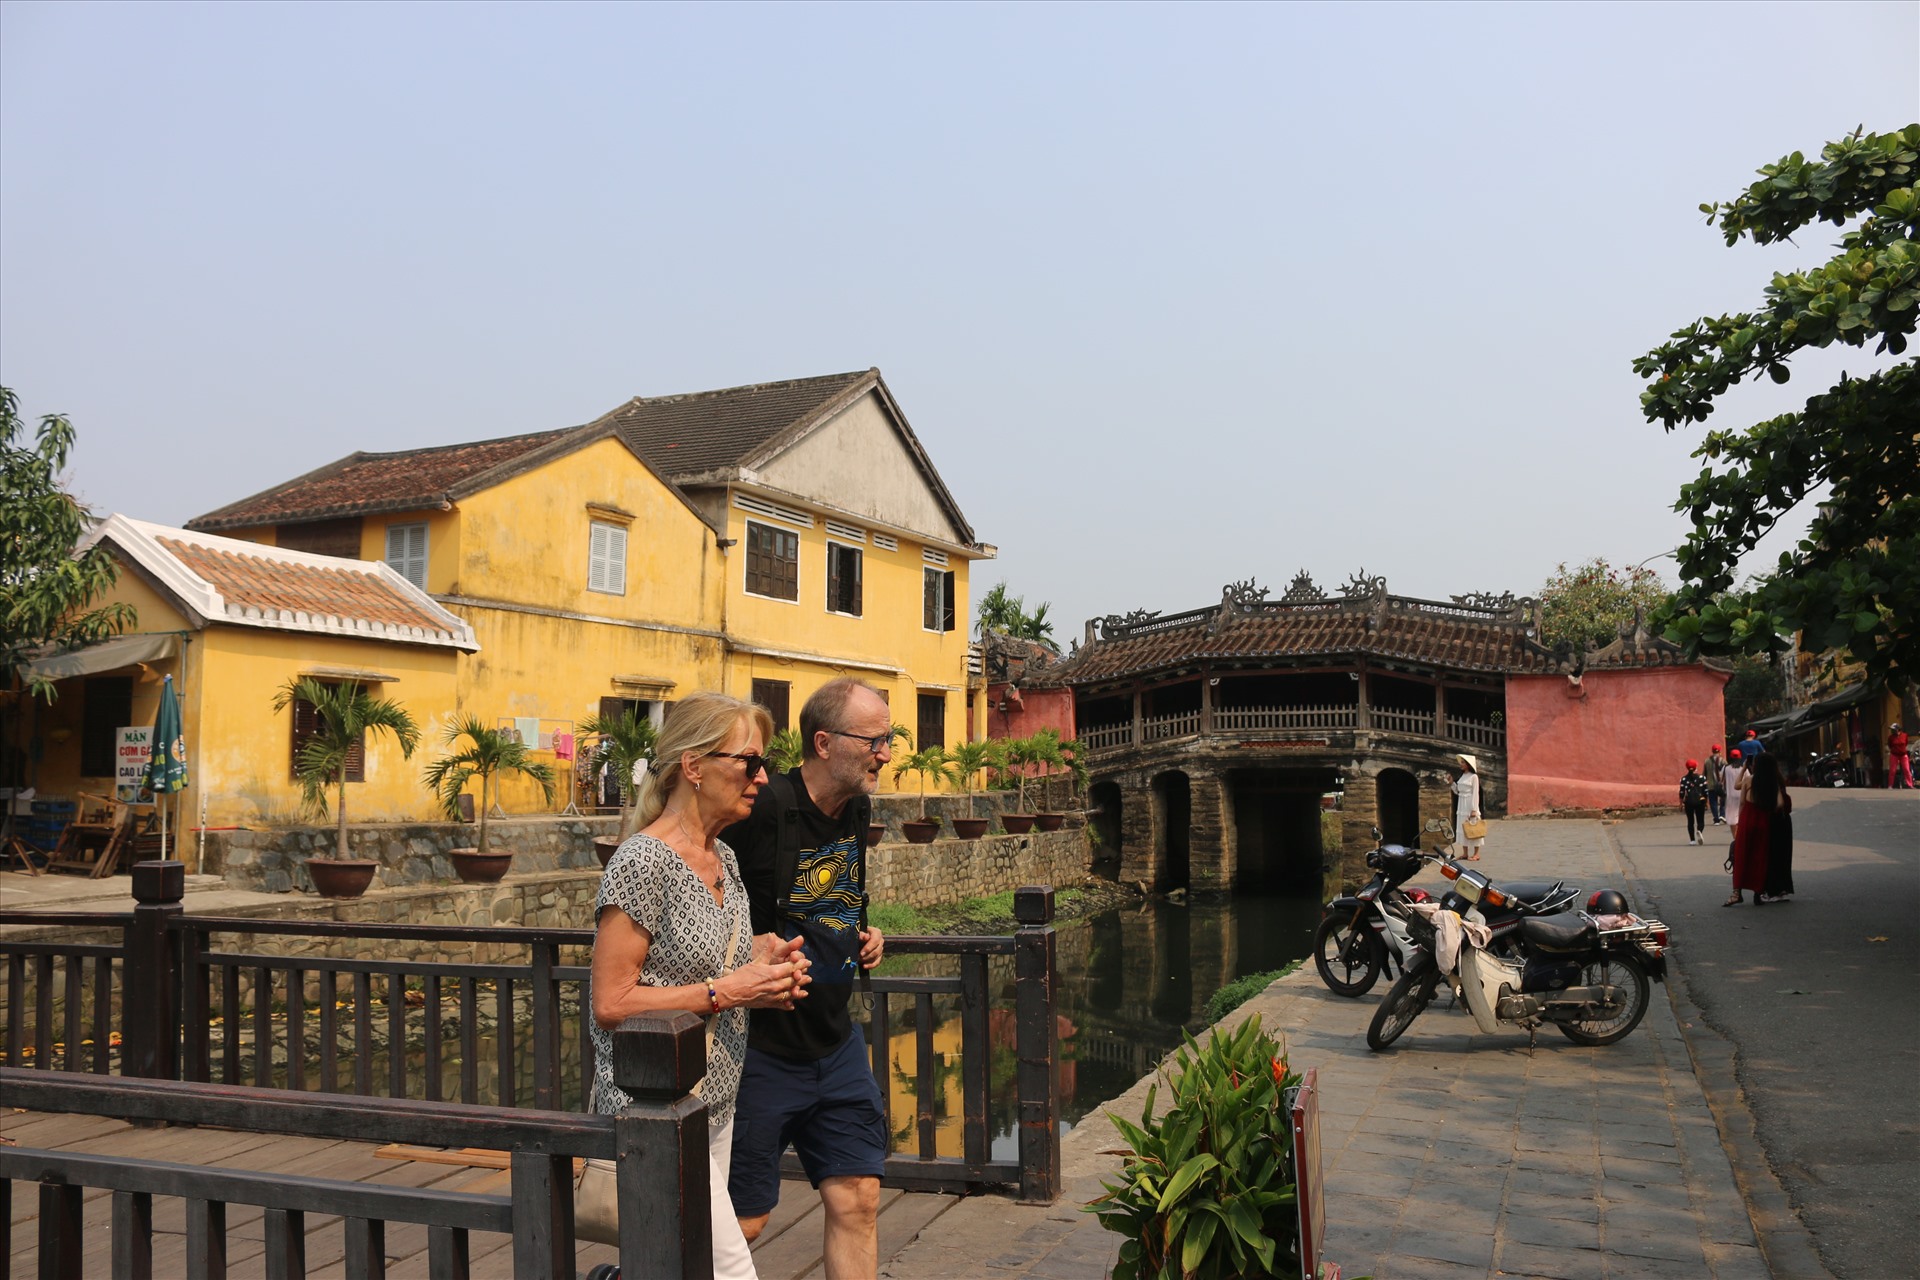 Tại di tích Chùa Cầu nơi đông đúc du khách đến tham quan chụp ảnh nhưng 2 du khách nước ngoài vẫn không đeo khẩu trang nhằm đảm bảo công tác phòng chống dịch bệnh viêm đường hô hấp cấp (COVID-19) đang diễn biến hết sức phức tạp.